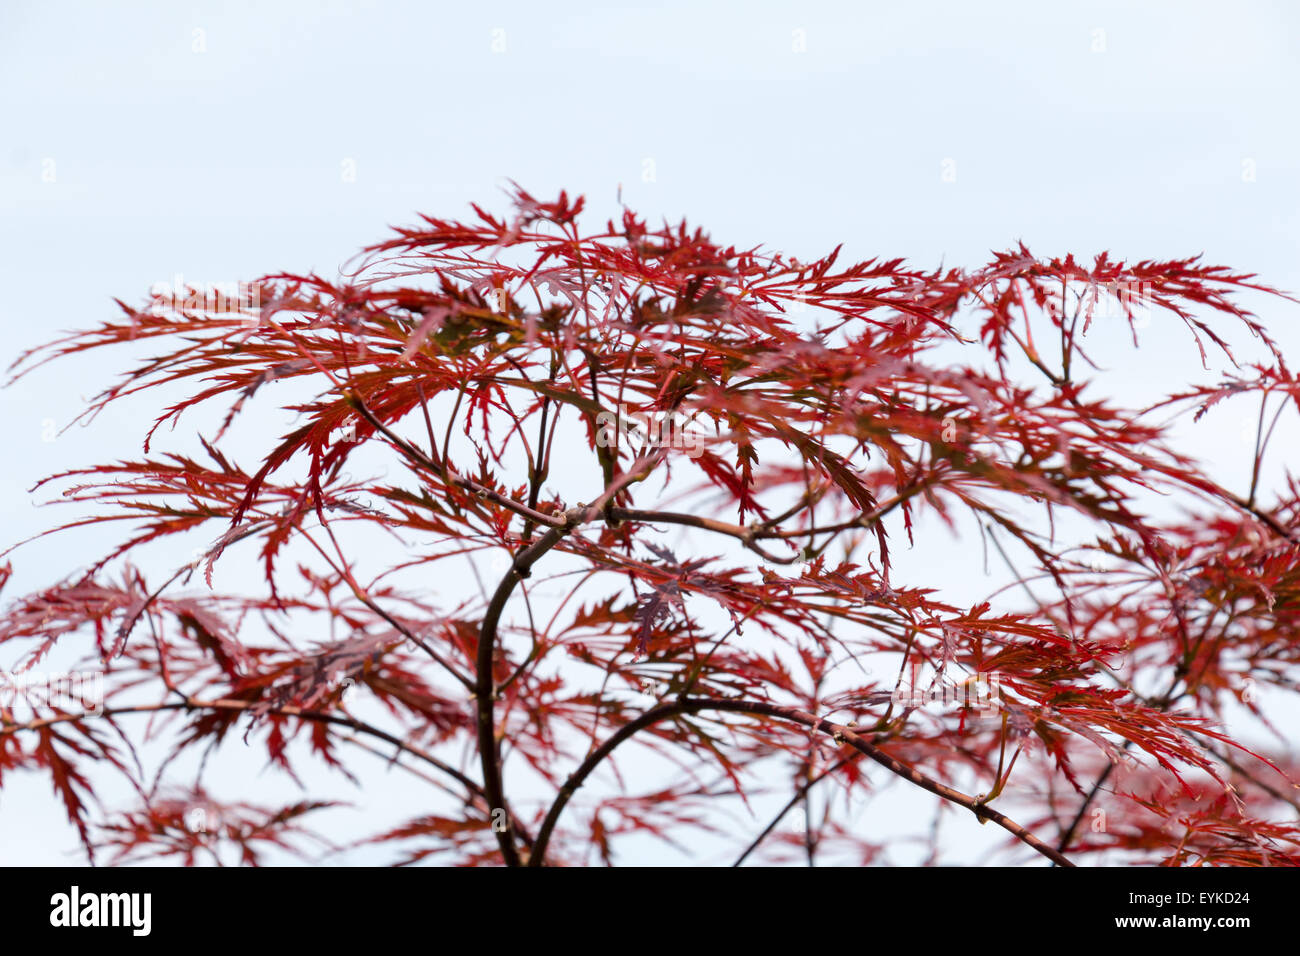 Wine-red leaves of the Japanese maple tree, Acer Palmatum Dissectum Atropurpureum, full Stock Photo